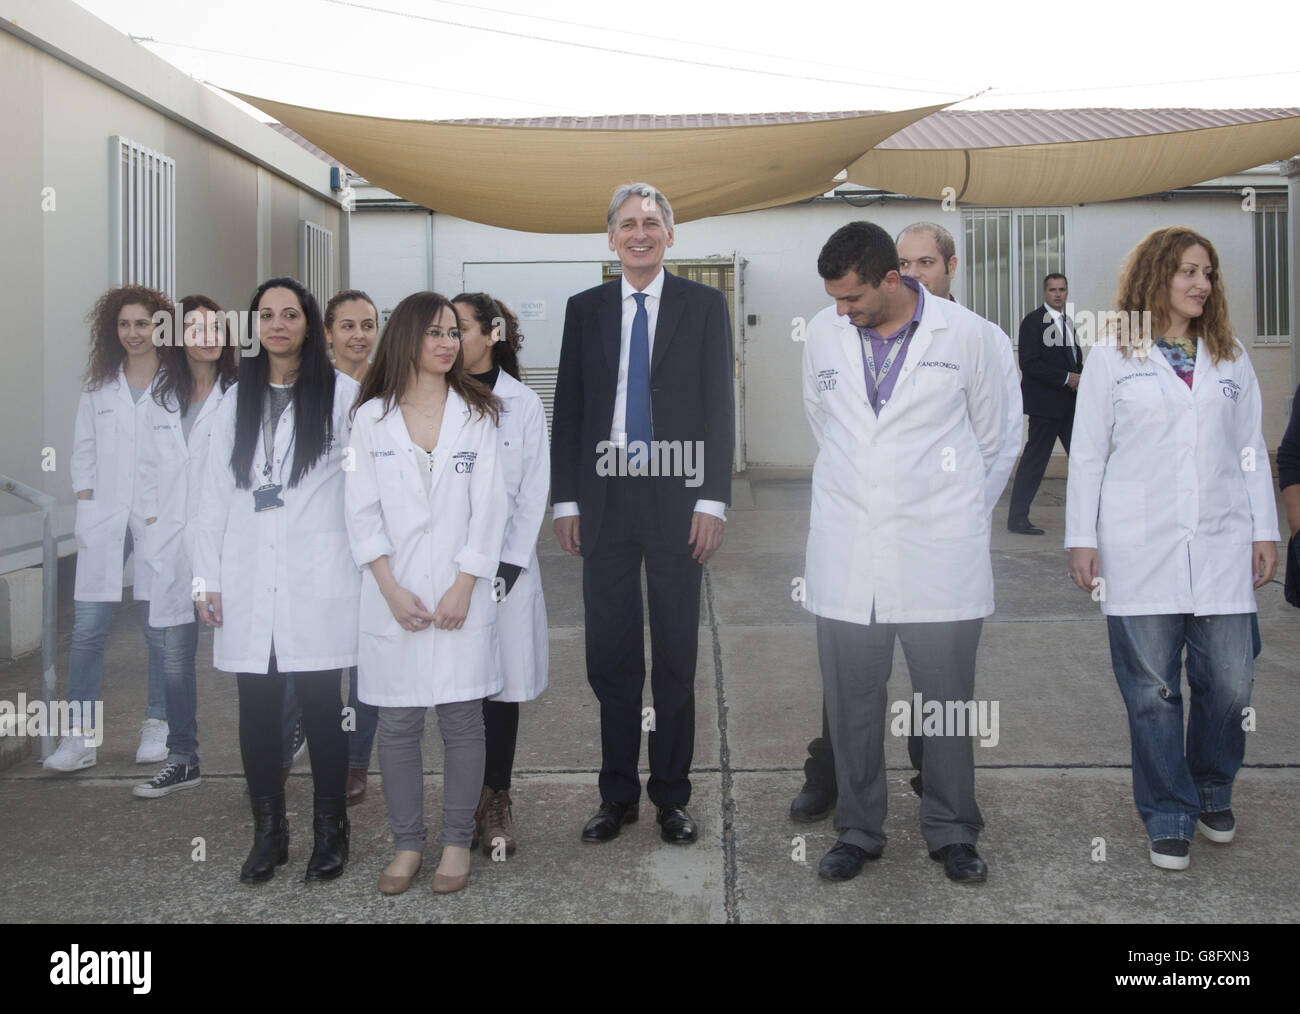 Le secrétaire aux Affaires étrangères Philip Hammond (au centre) pose avec des scientifiques au laboratoire d'anthropologie du Comité des personnes disparues (CMP) de l'ONU, situé dans la zone tampon, lors de sa visite à Chypre. Banque D'Images